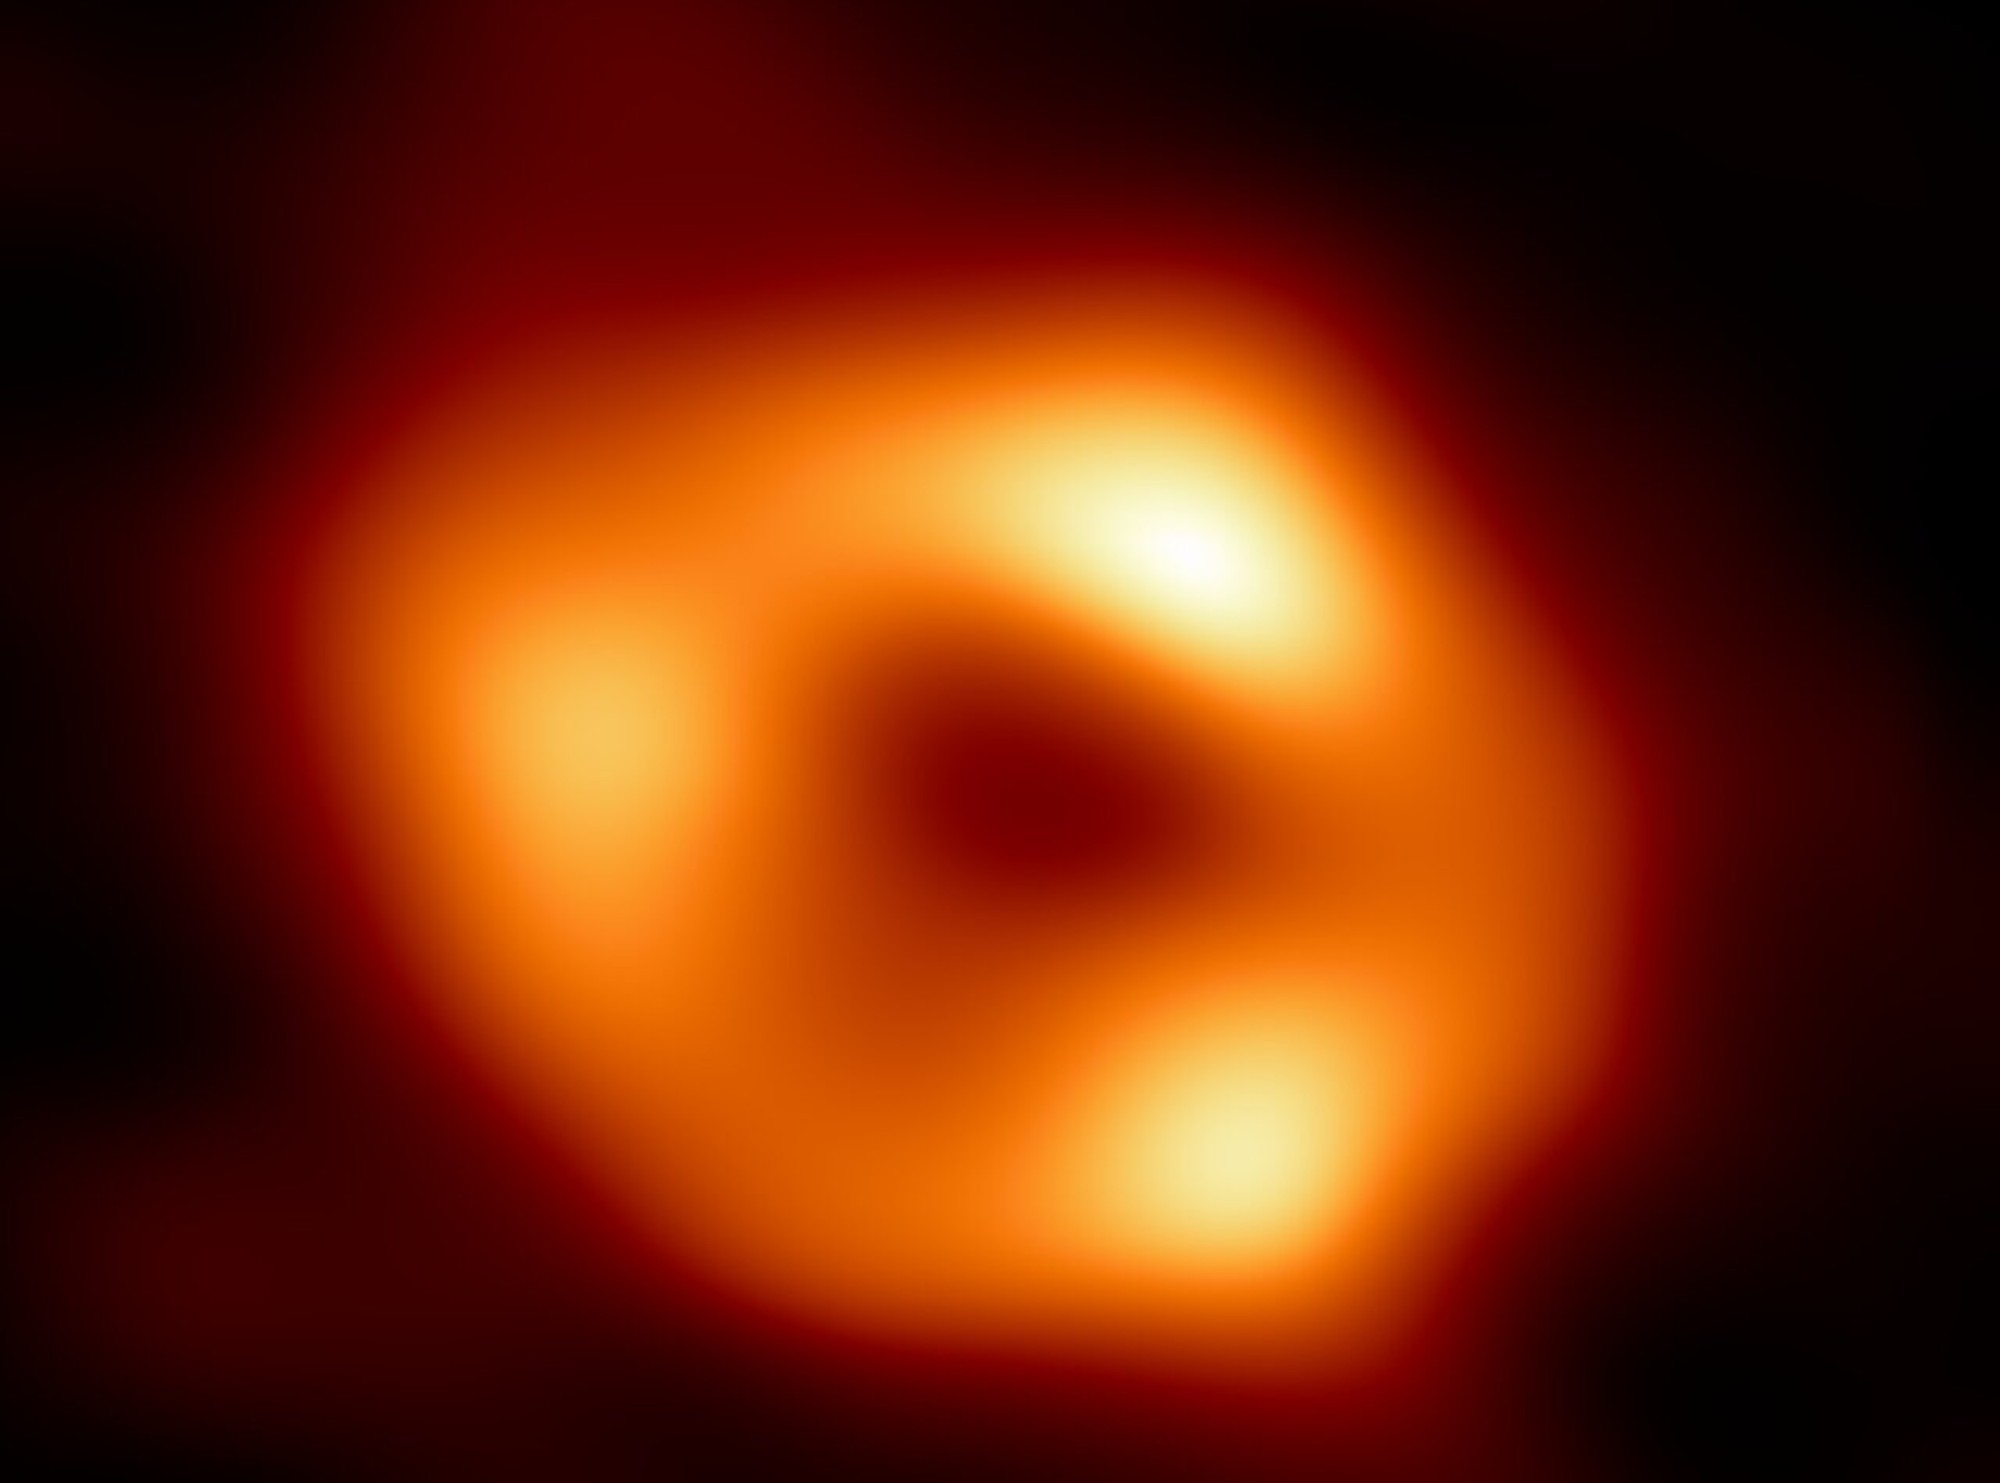 La imagen del agujero negro Sagitario A* confirma en parte la teoría de la relatividad.